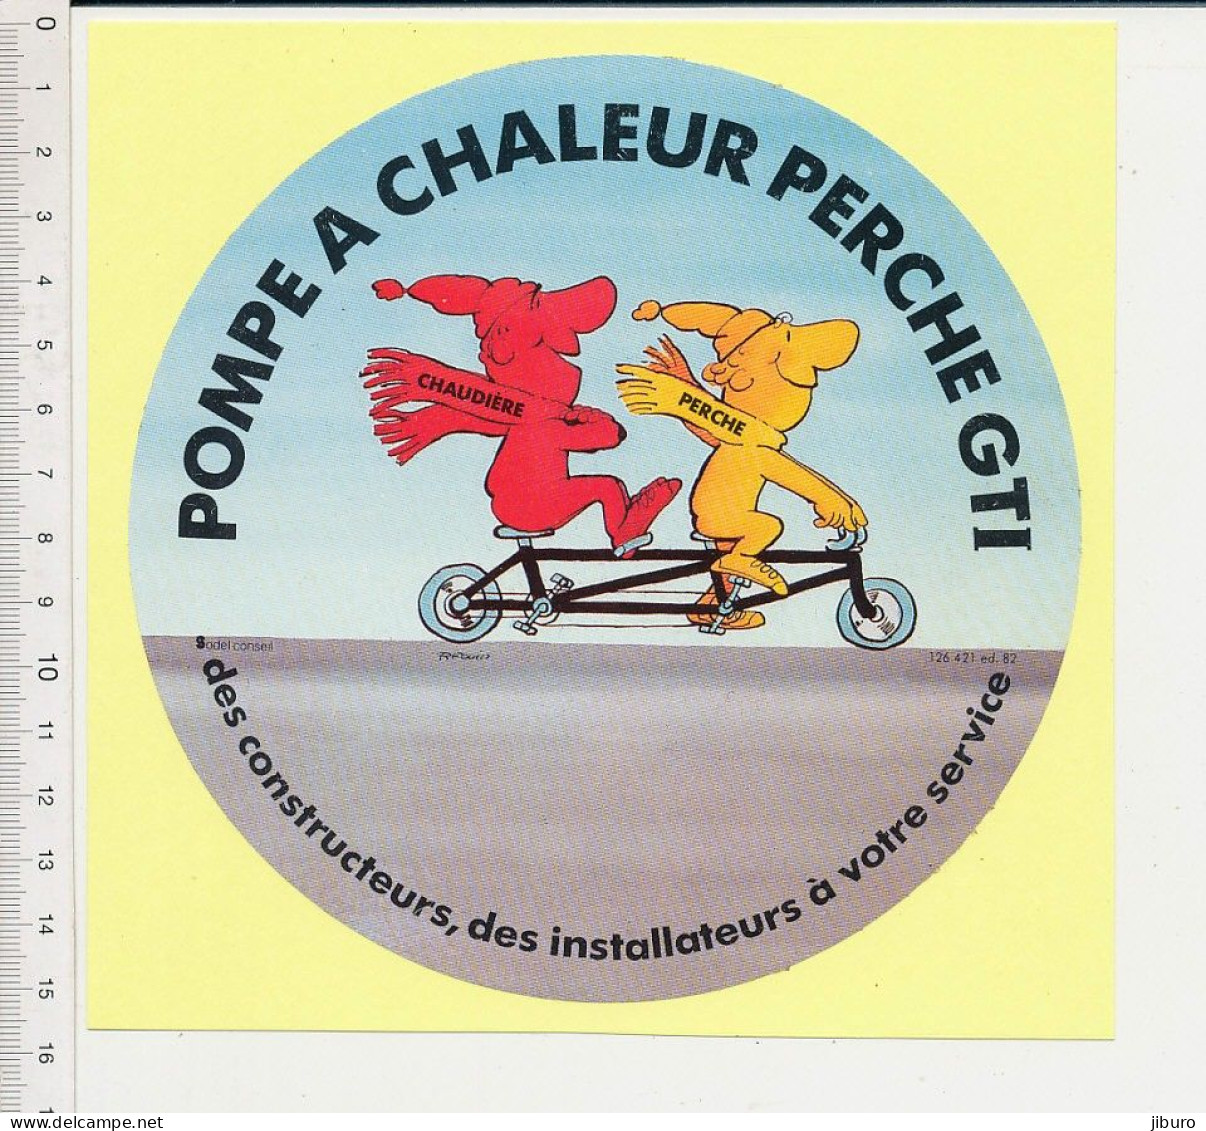 (collé Sur Papier) Sticker Autocollant Pompe à Chaleur Perche GTI Humour Vélo Tandem Bicyclette écharpes Froid - Adesivi